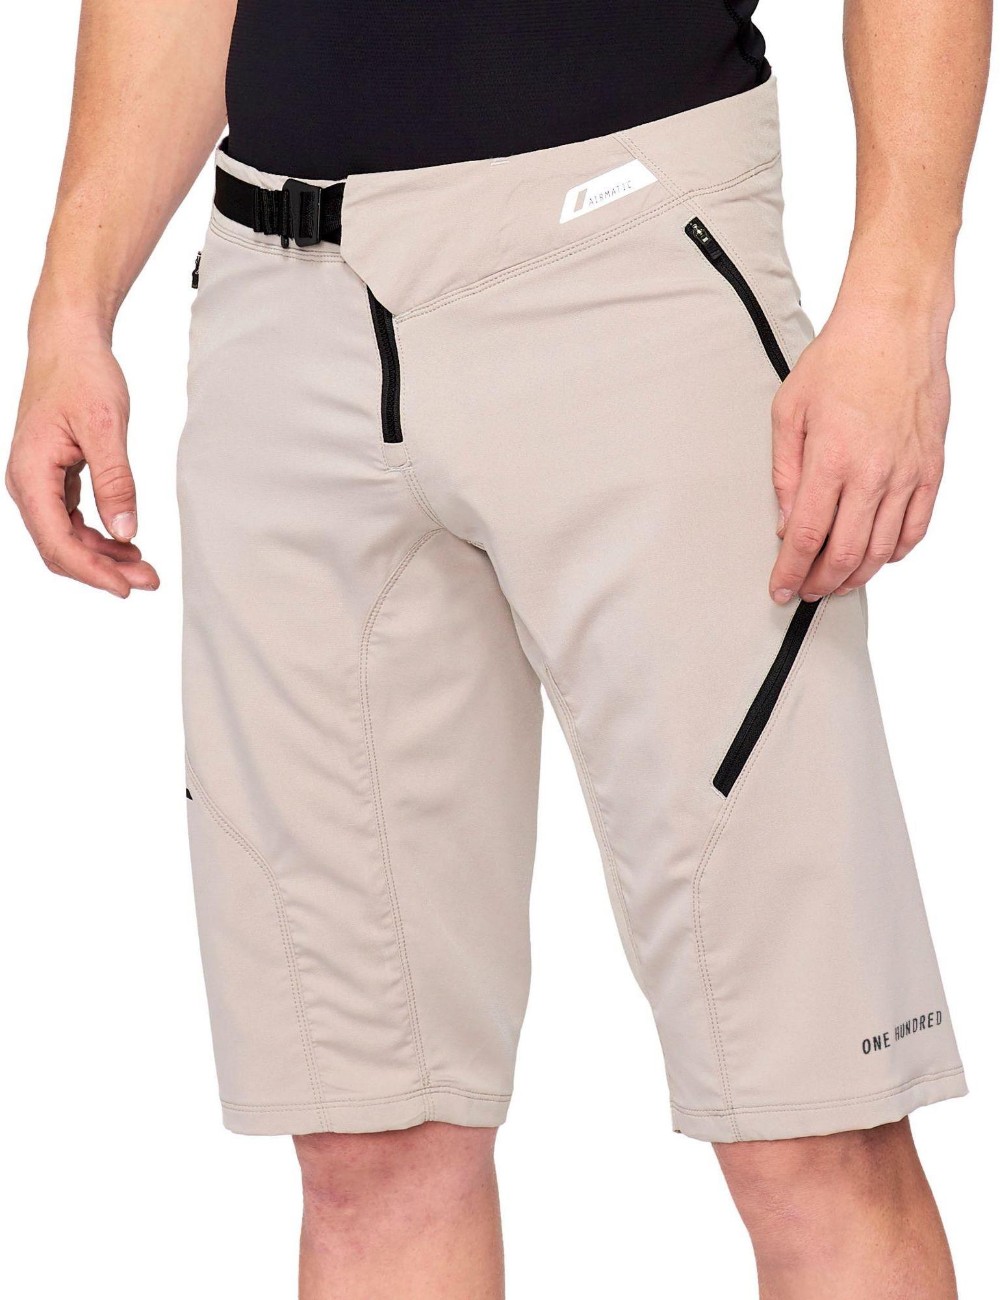 Airmatic Shorts image 0